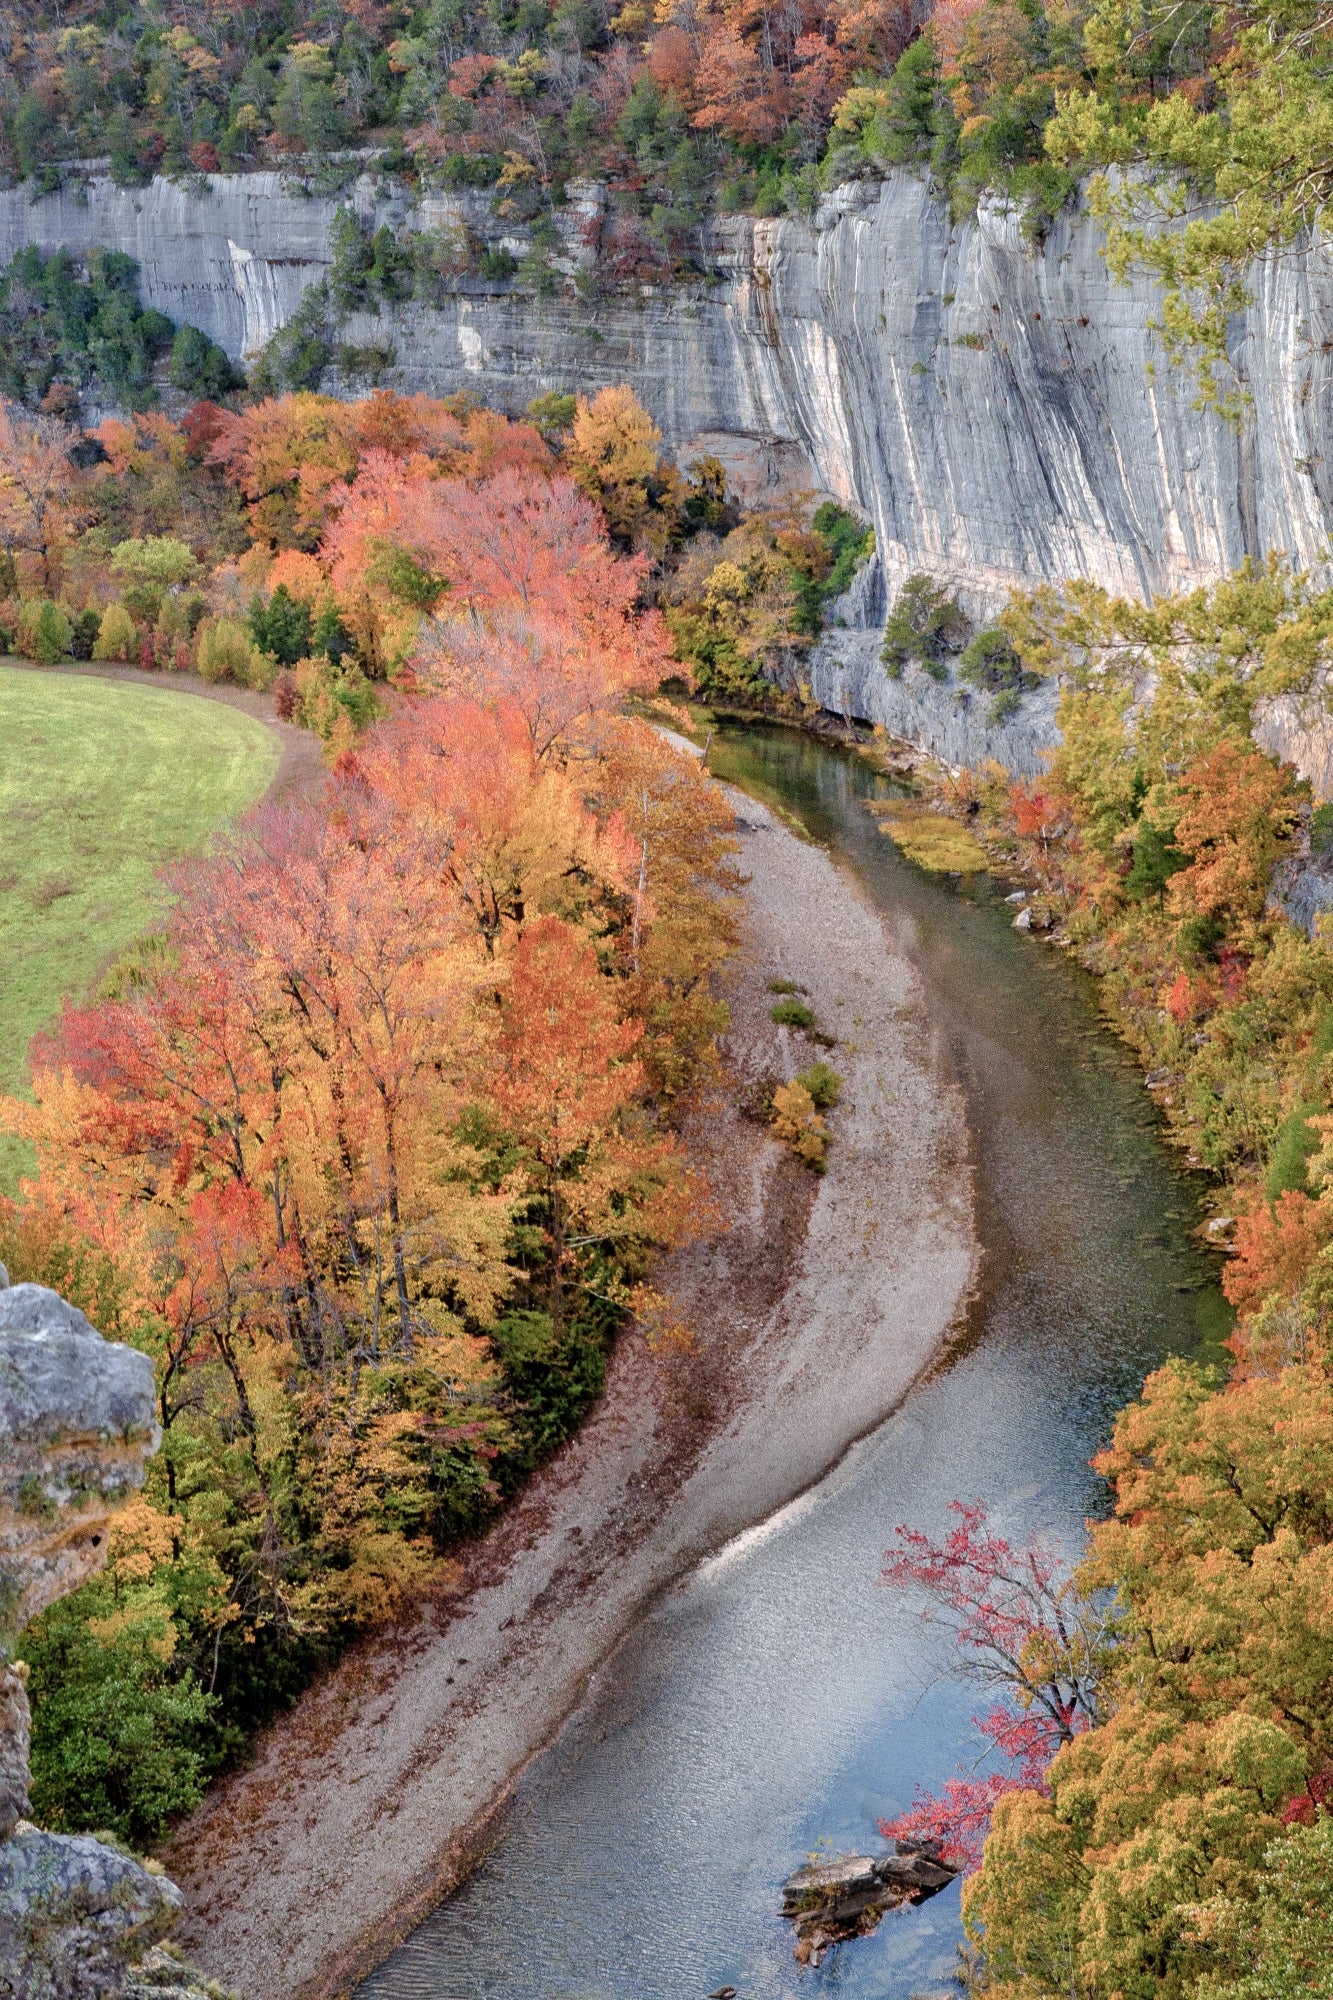 Fall on Roark Bluff by Jay McDonald